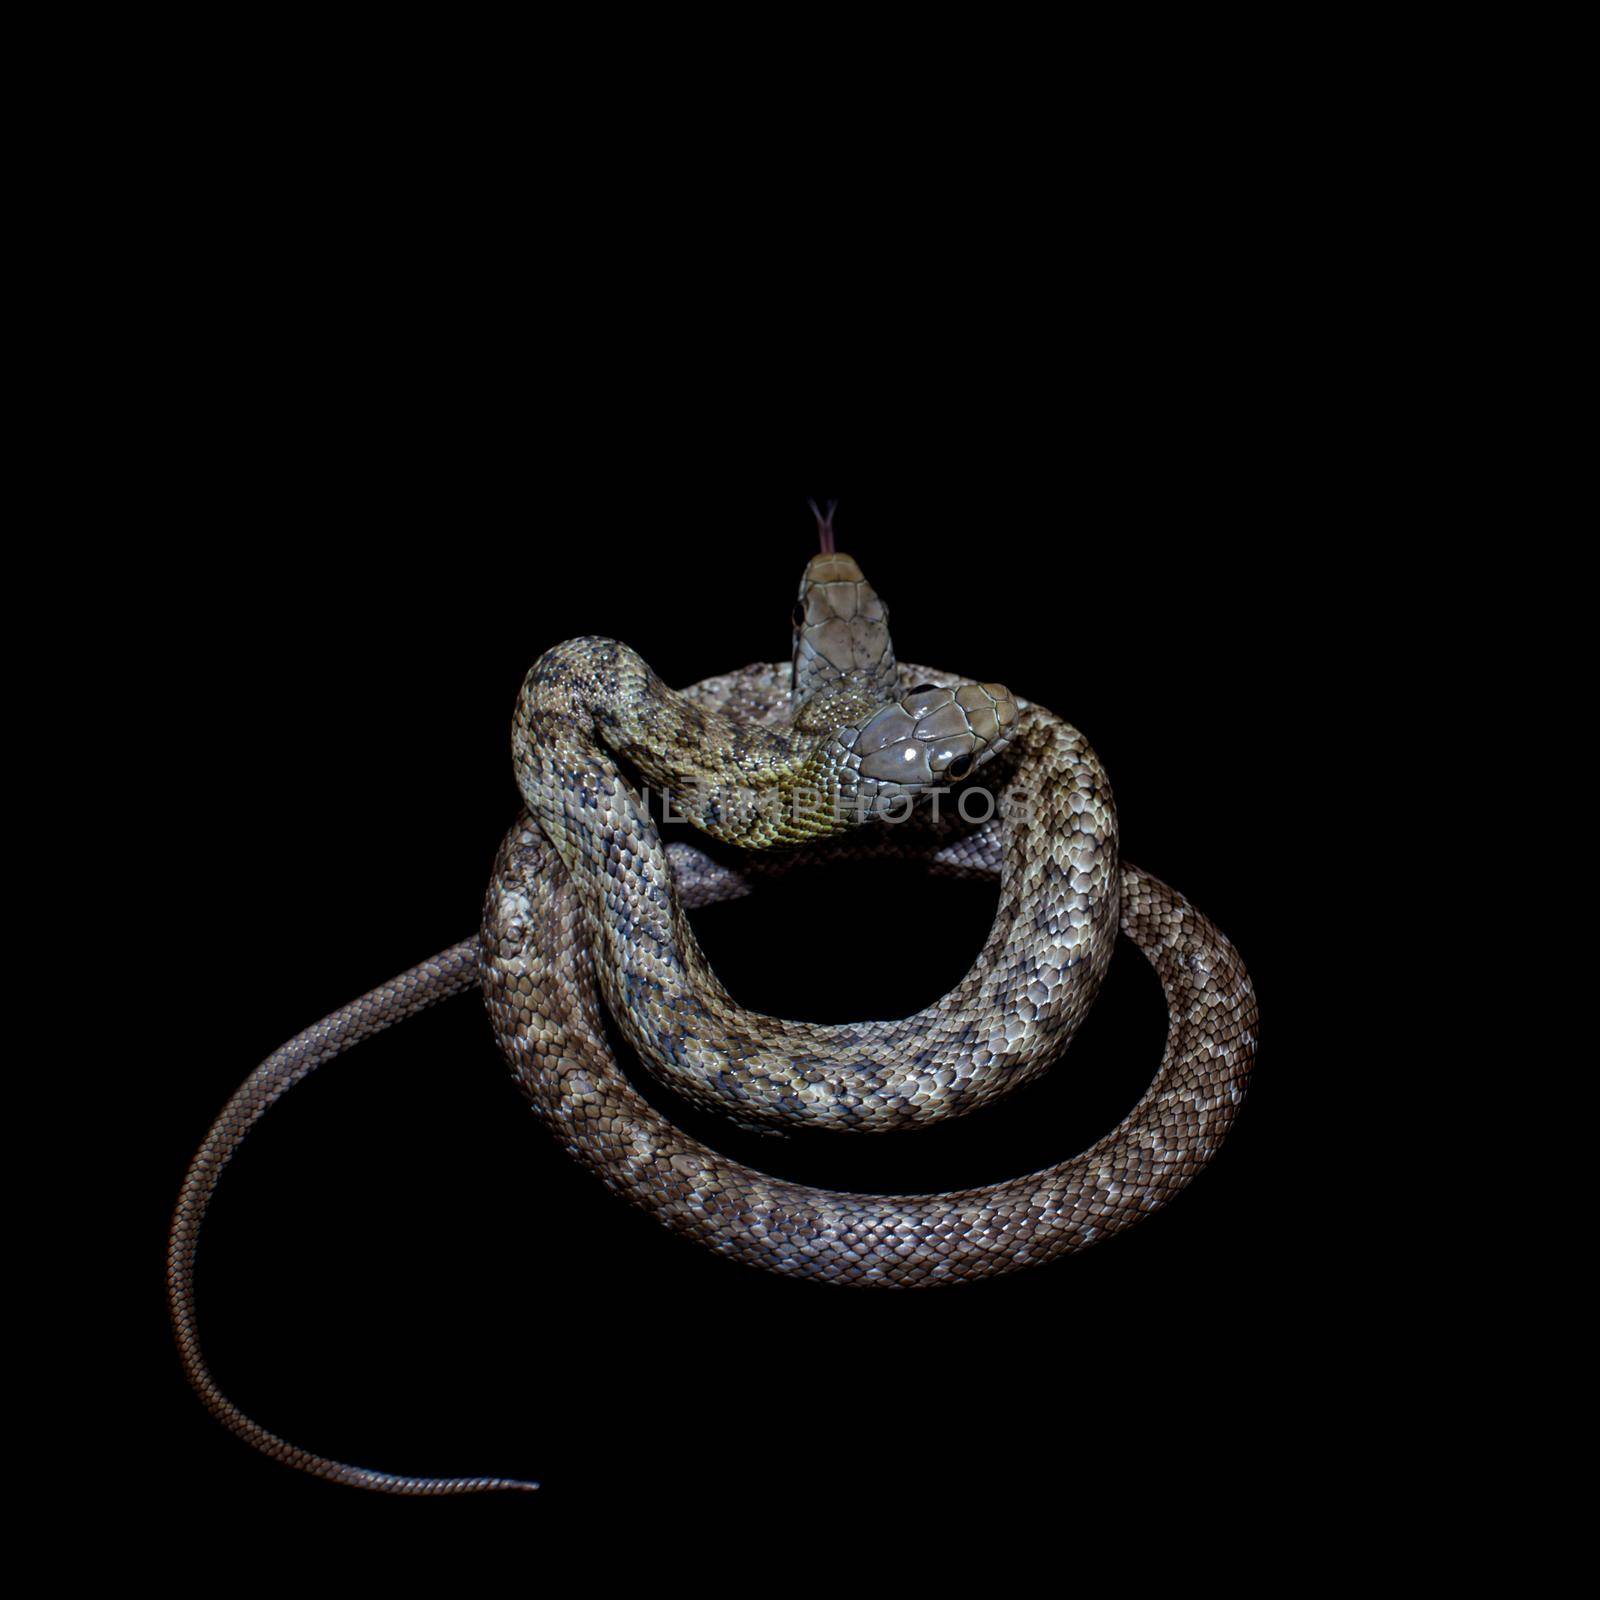 The two headed Japanese rat snake, Elaphe climacophora, isolated on black background